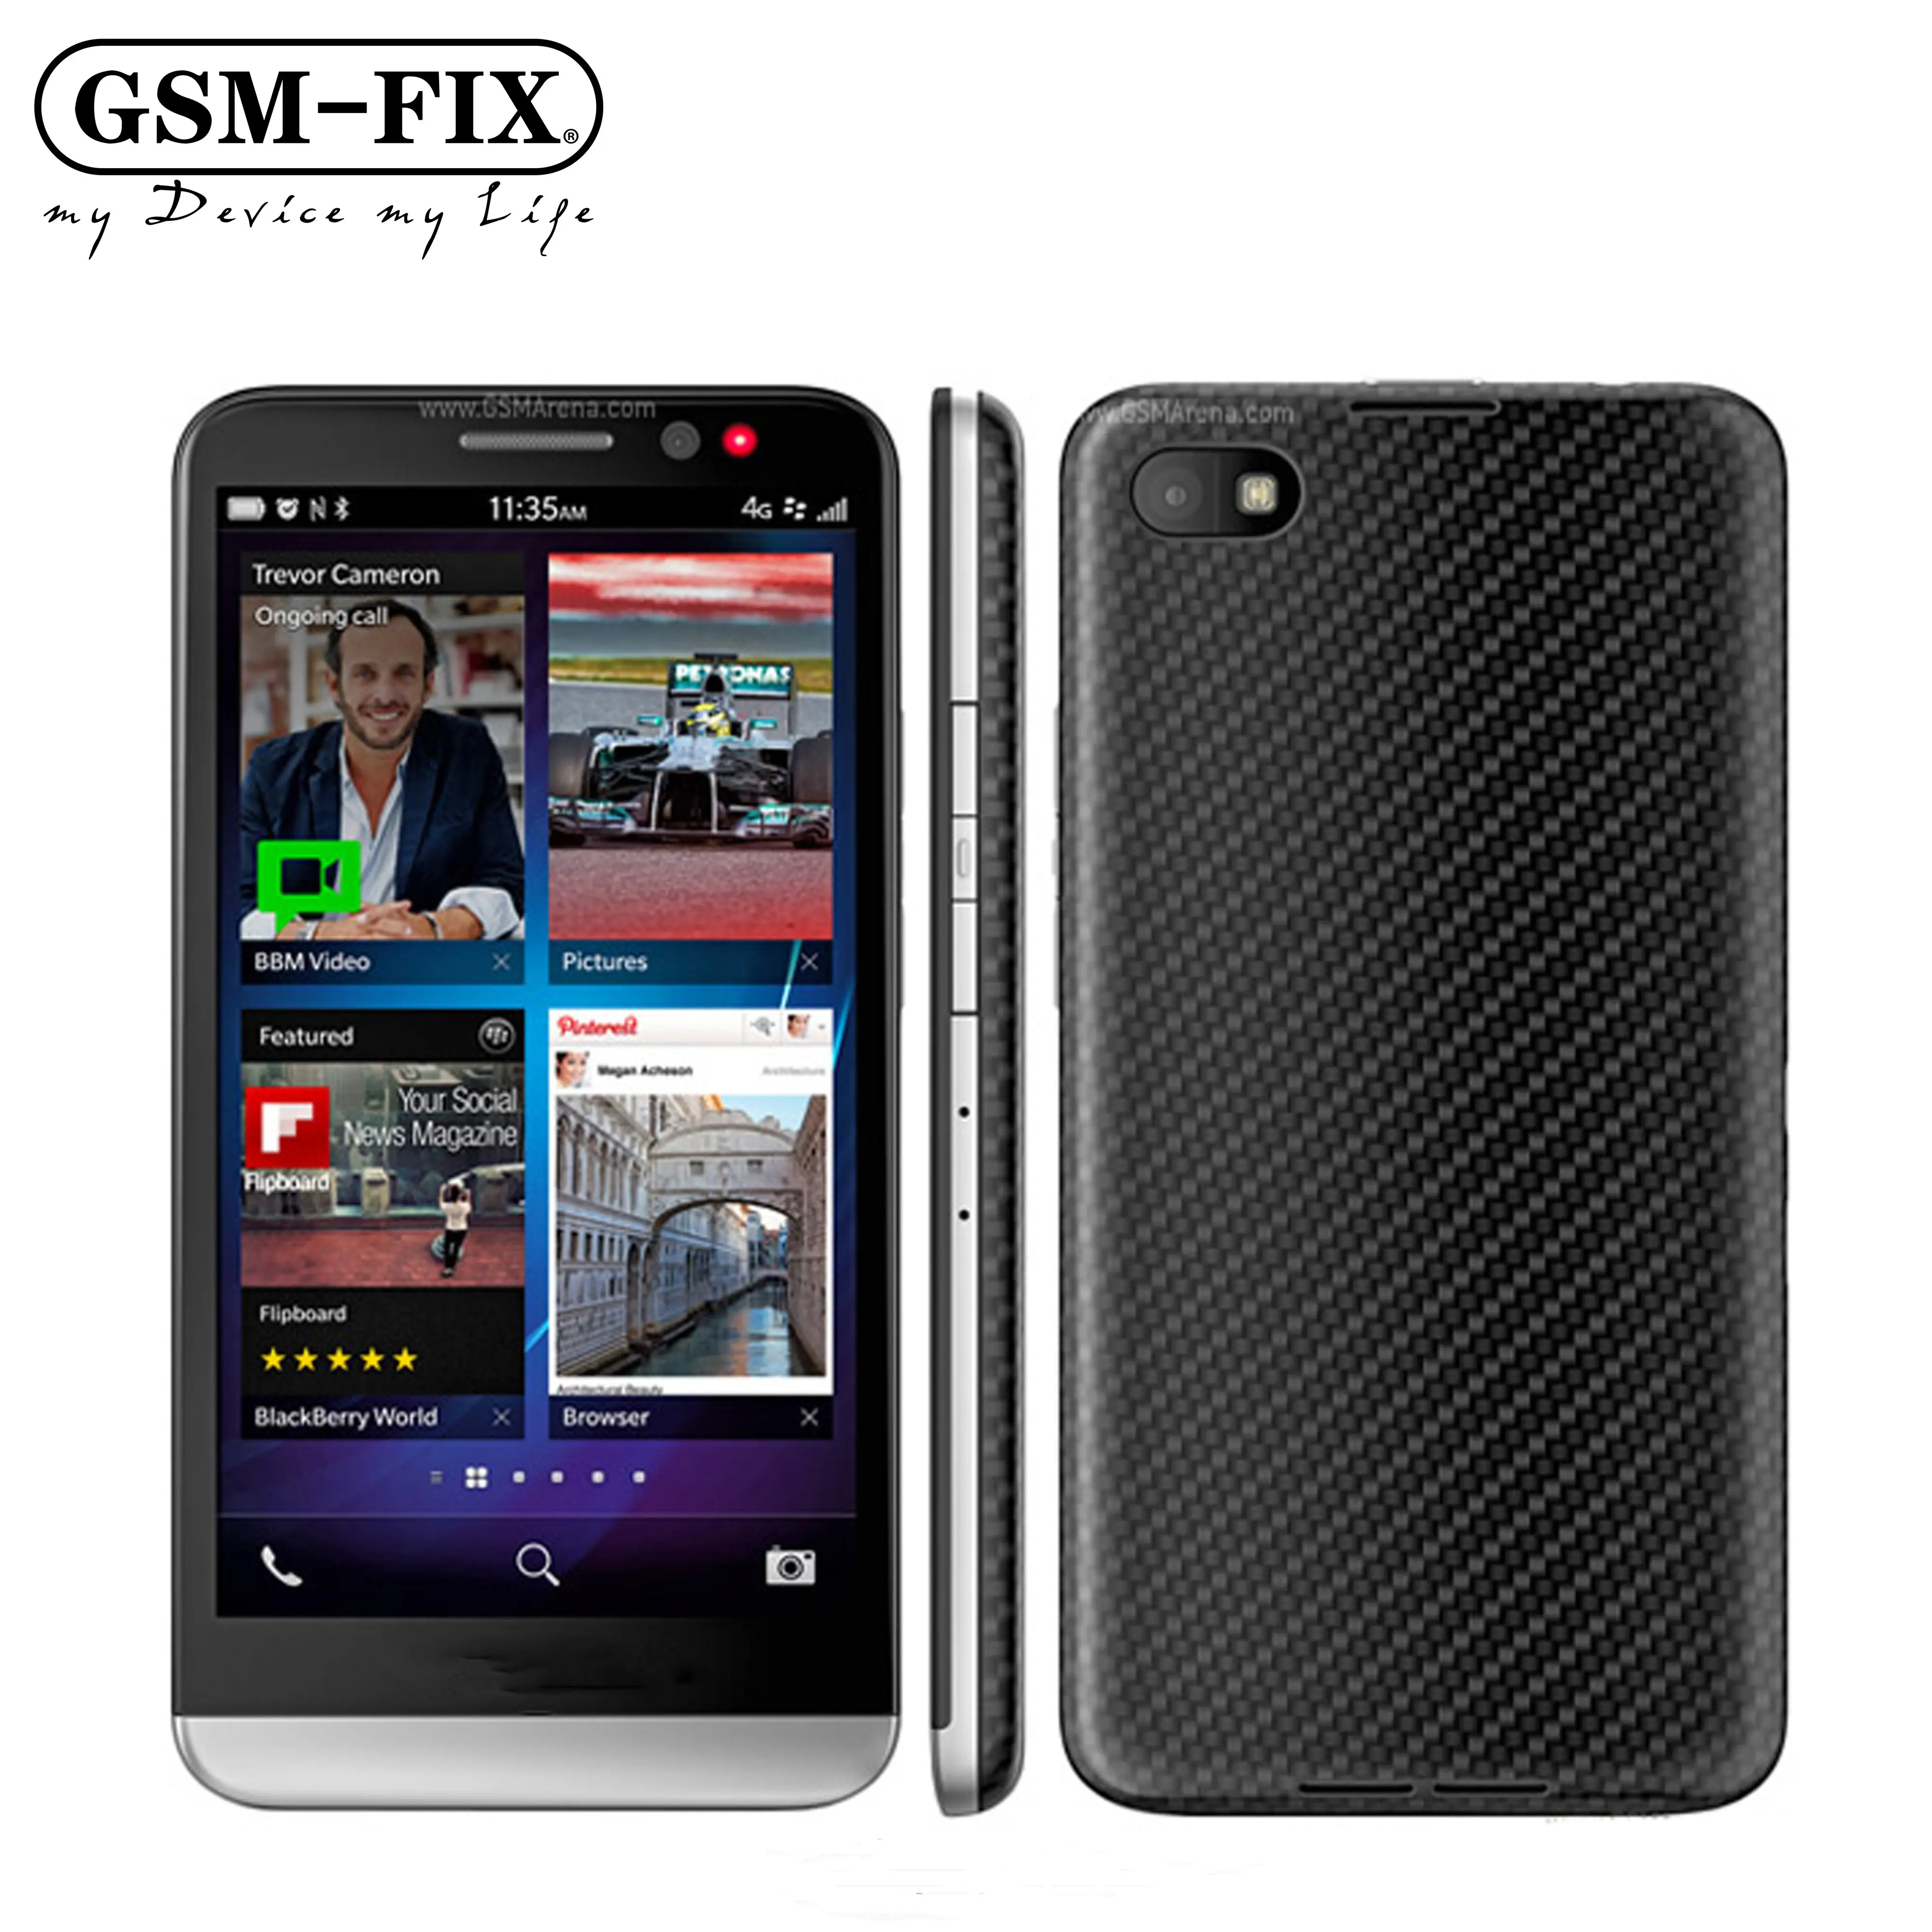 GSM-FIX 최고 품질 원래 잠금 해제 GSM 브랜드 터치 스크린 휴대 전화 스마트 폰 블랙 베리 z50